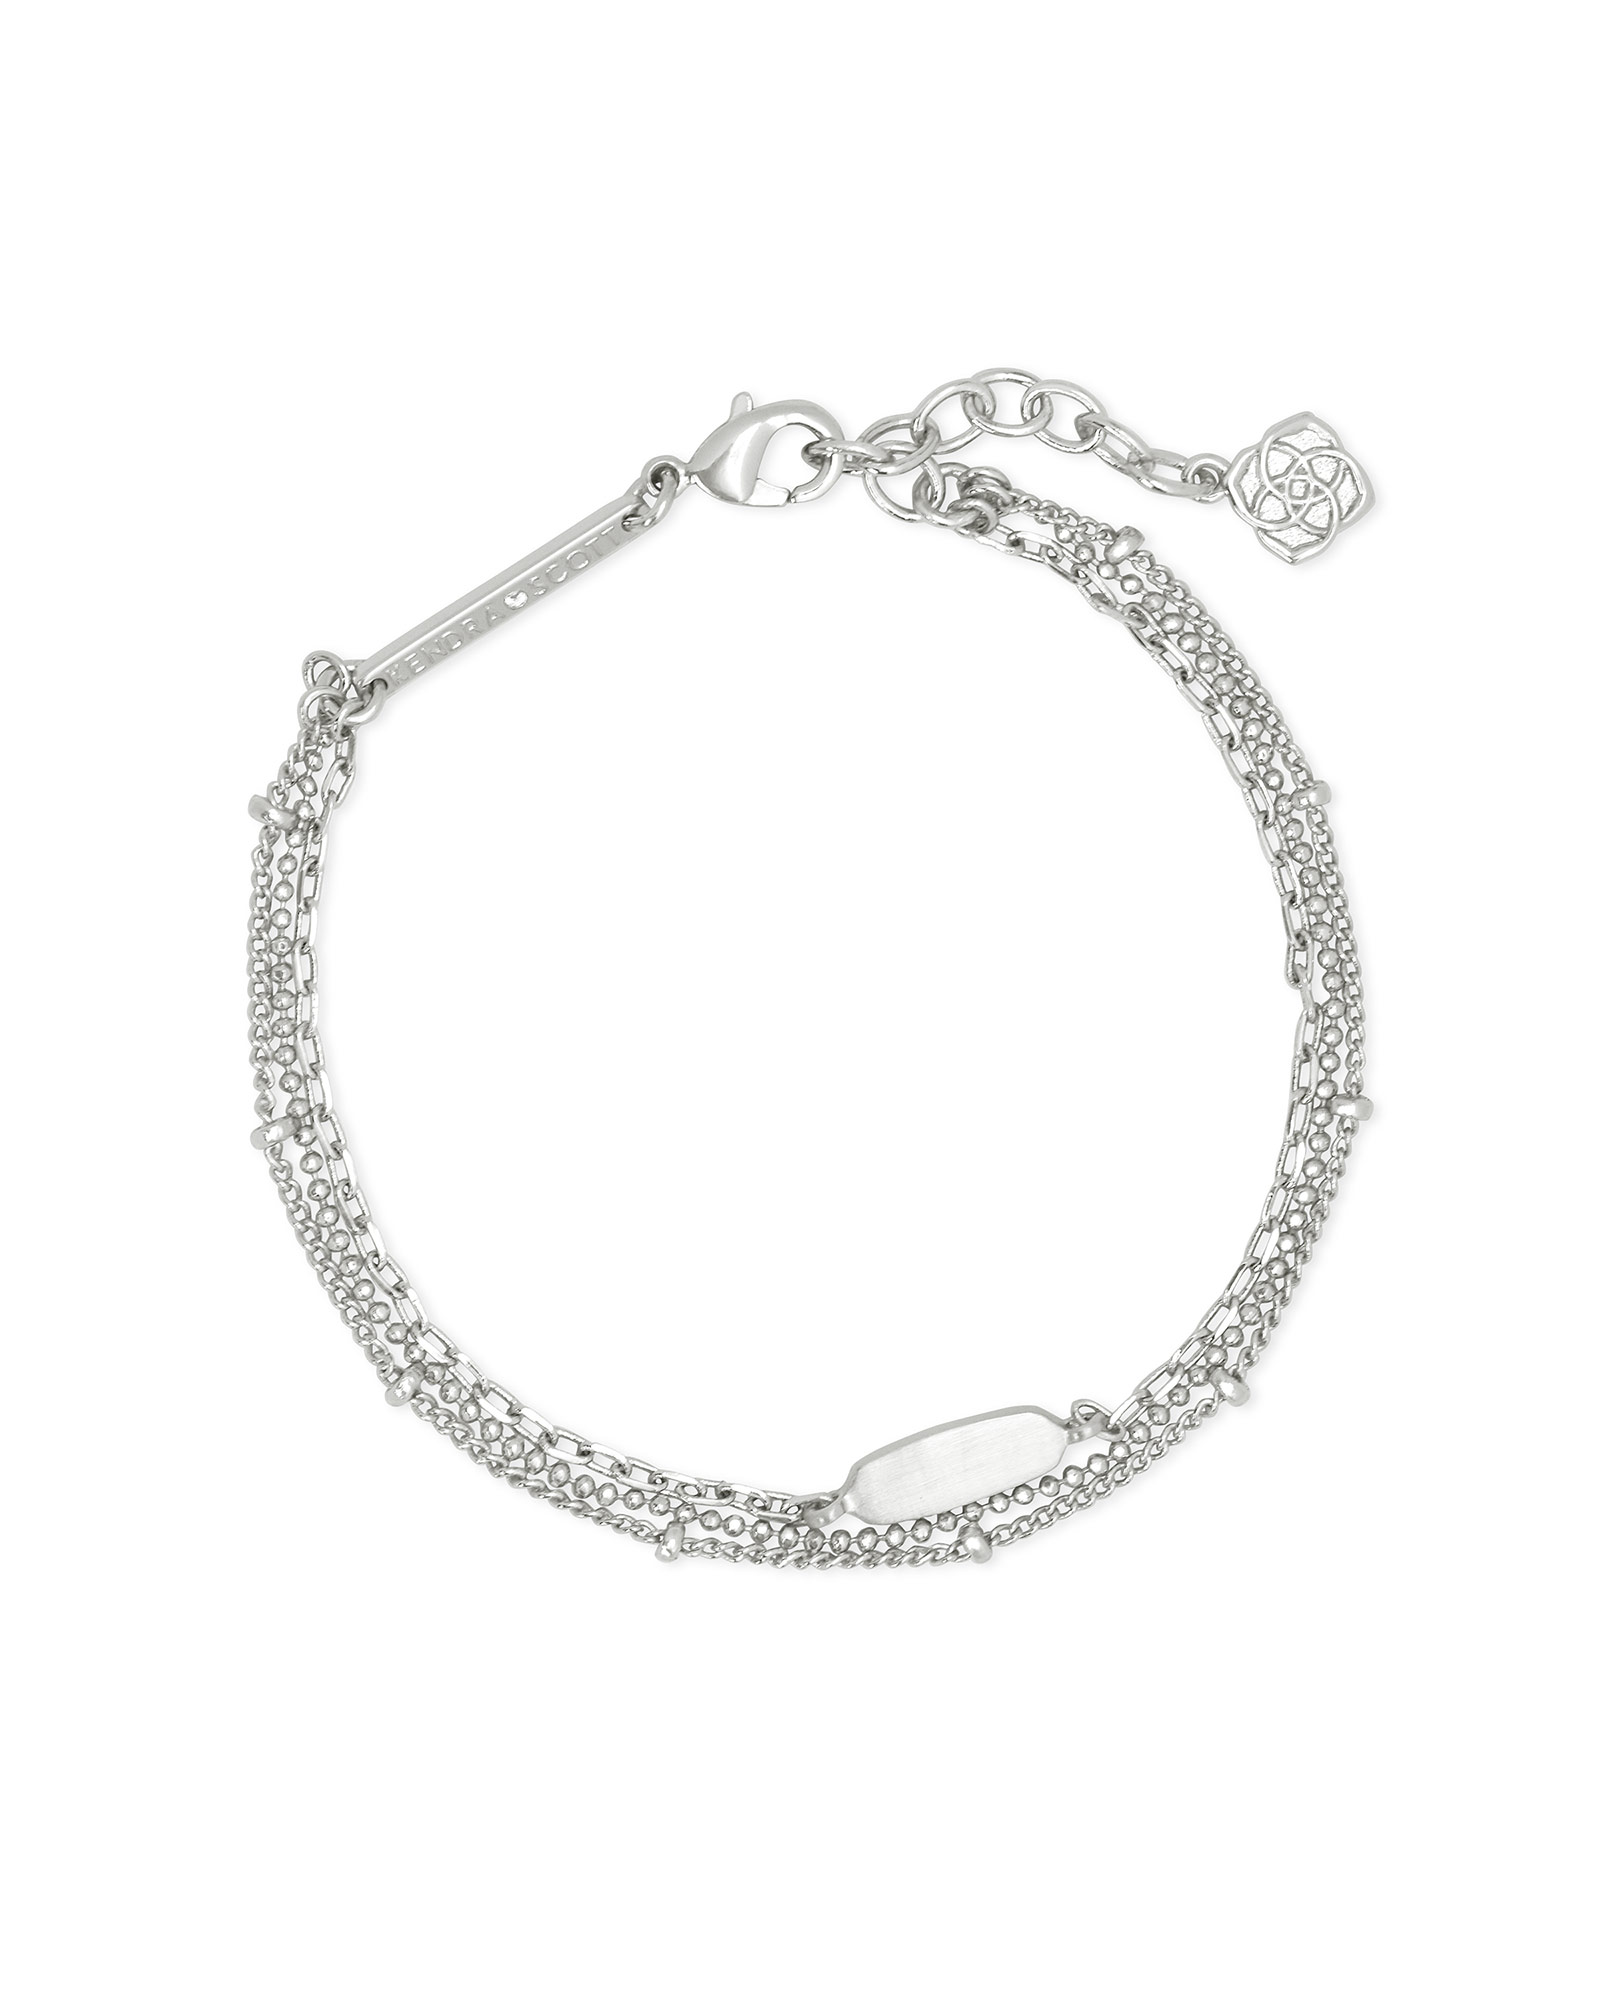 Fern Multi Strand Bracelet in Bright Silver | Kendra Scott